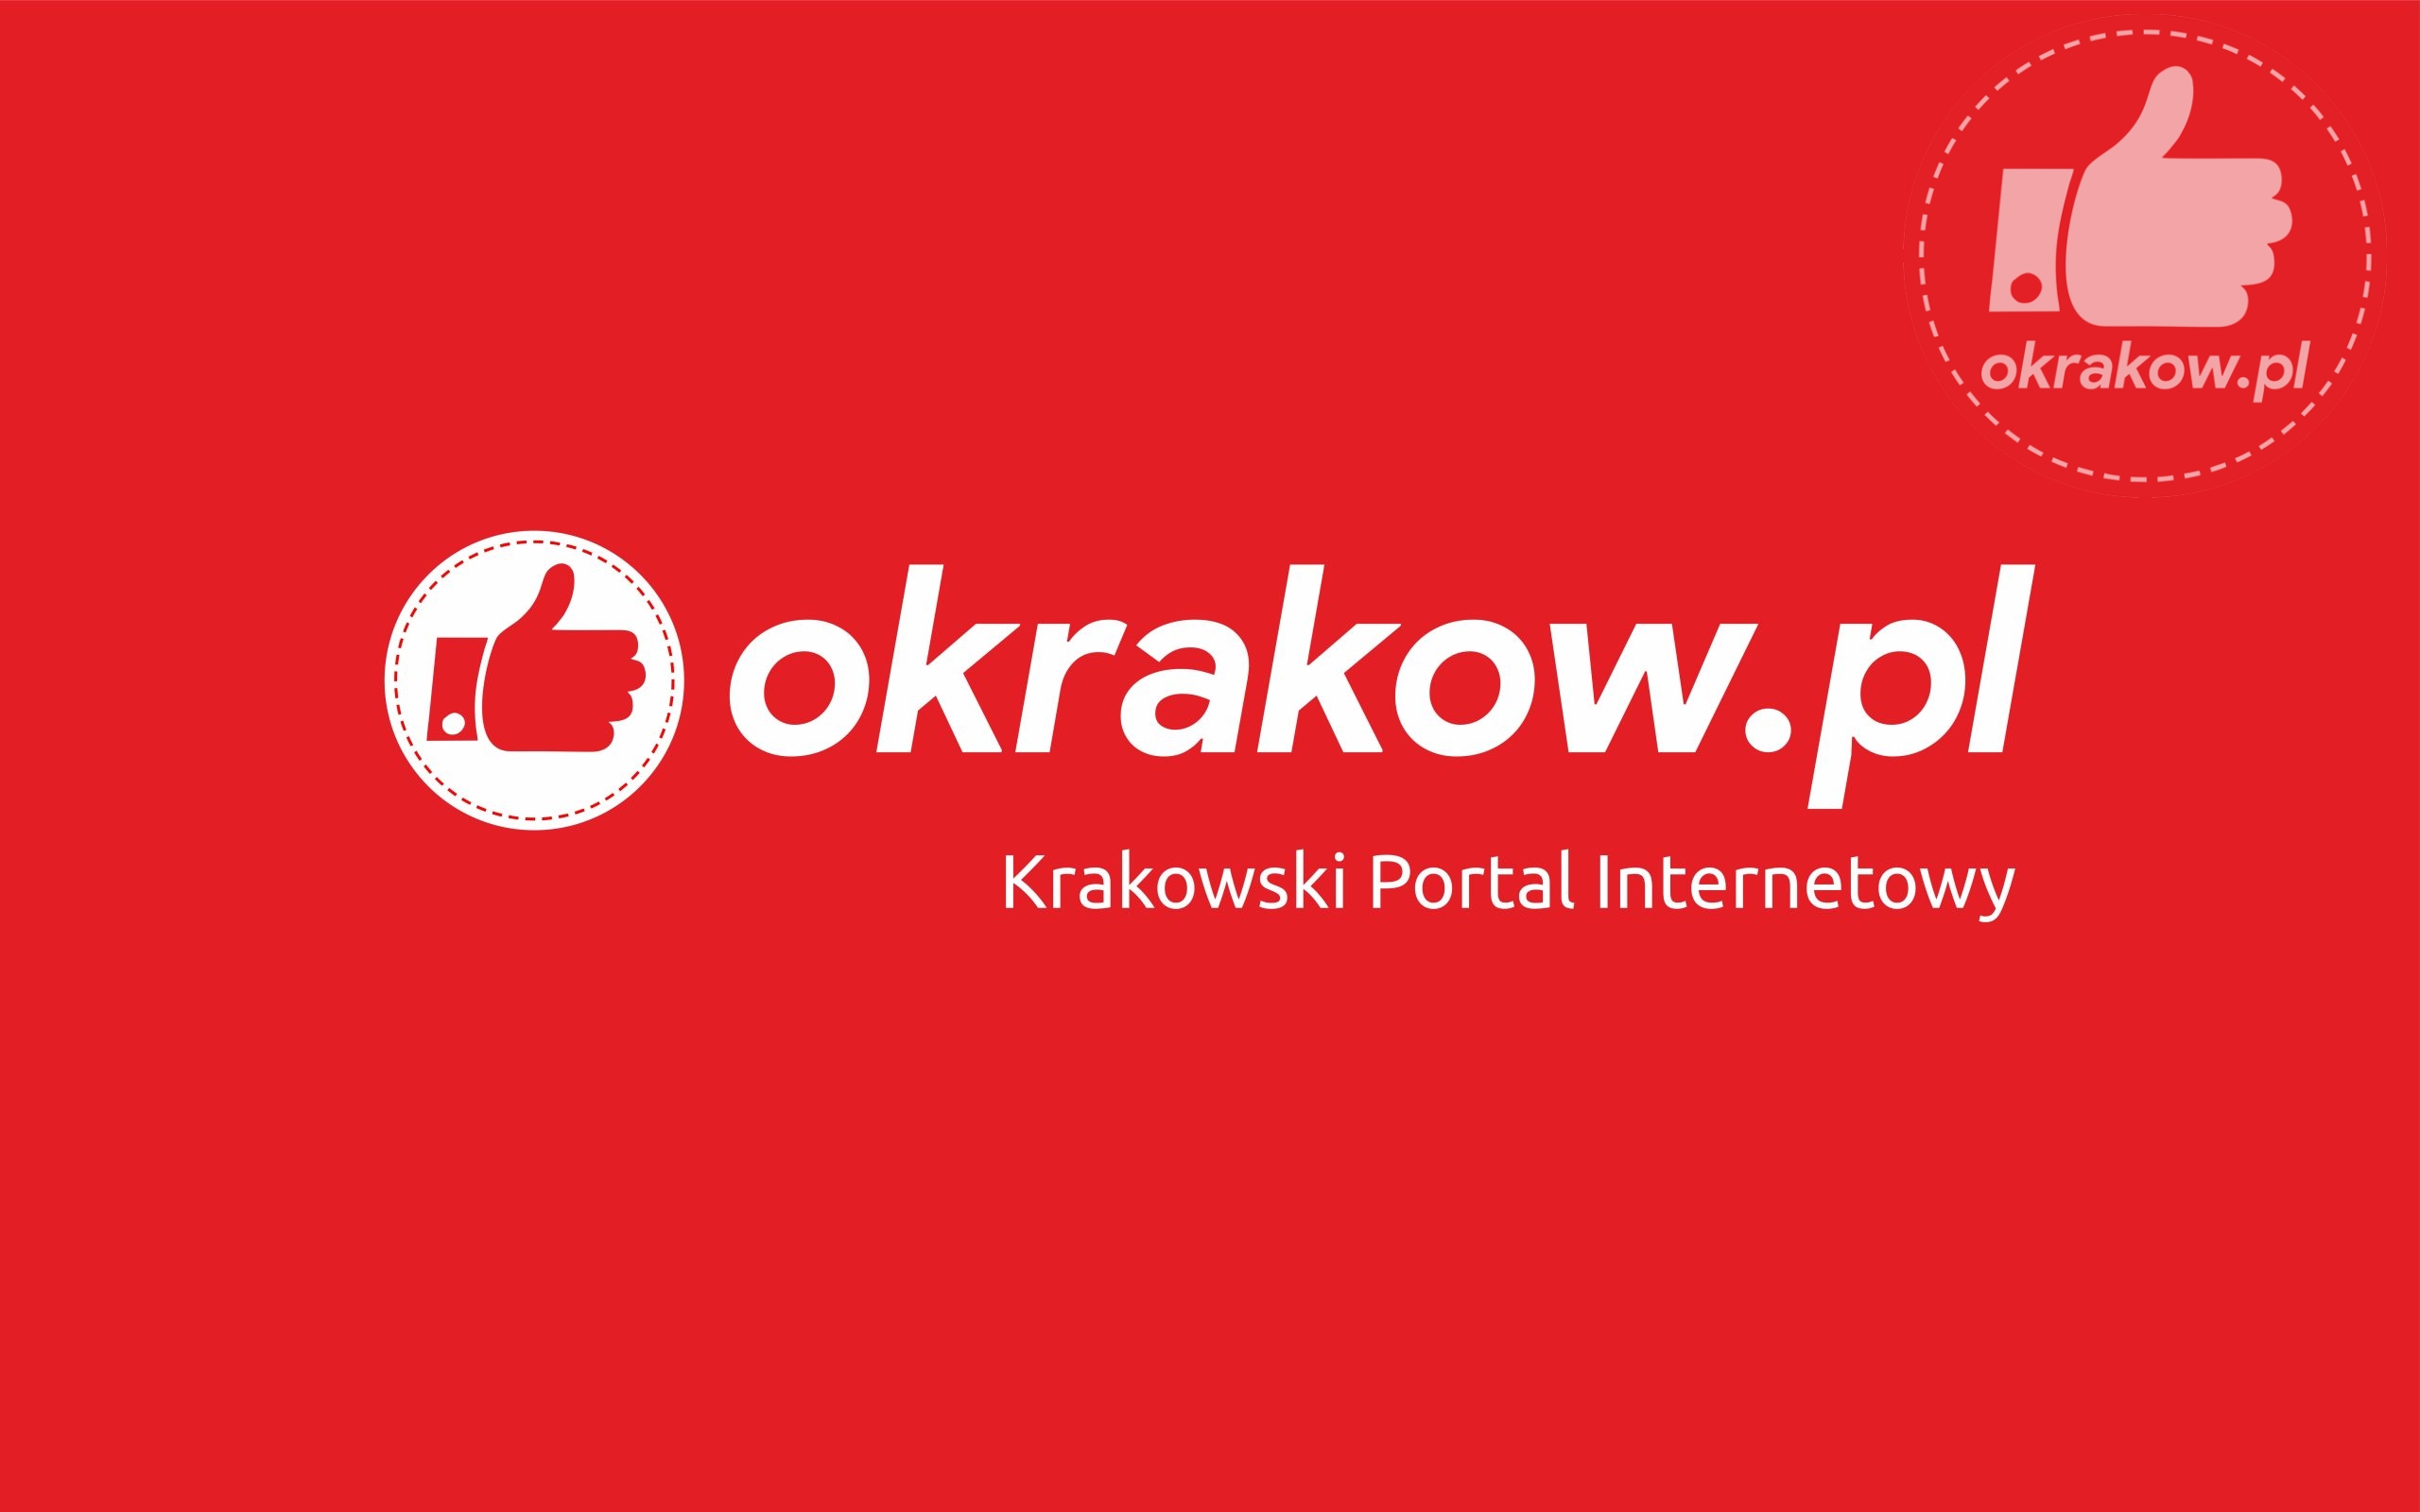 krakow scaled - Krakowski Portal Internetowy